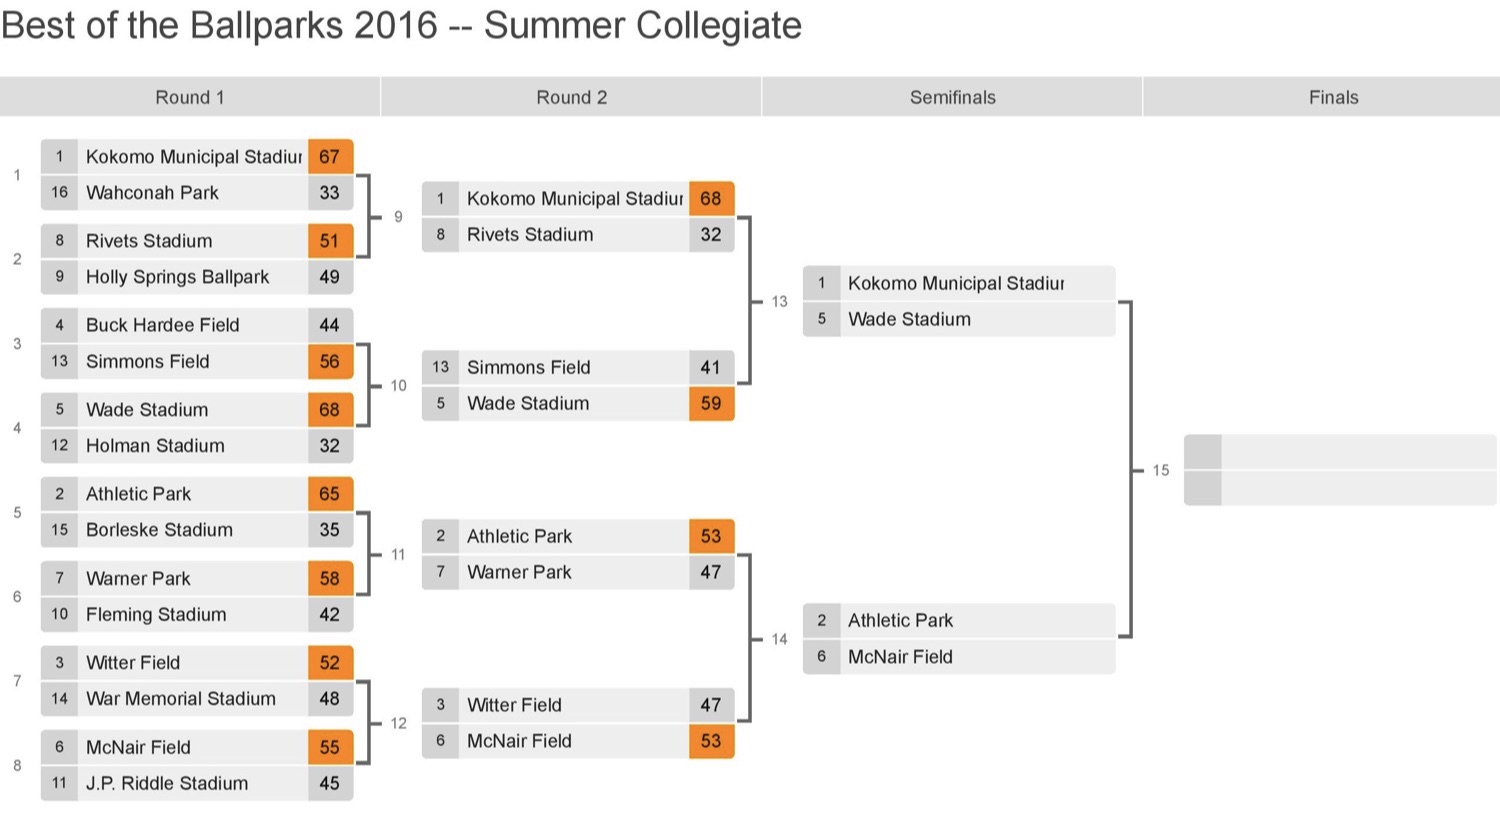 Best of the Ballparks 2016 Summer Collegiate Fourth Round